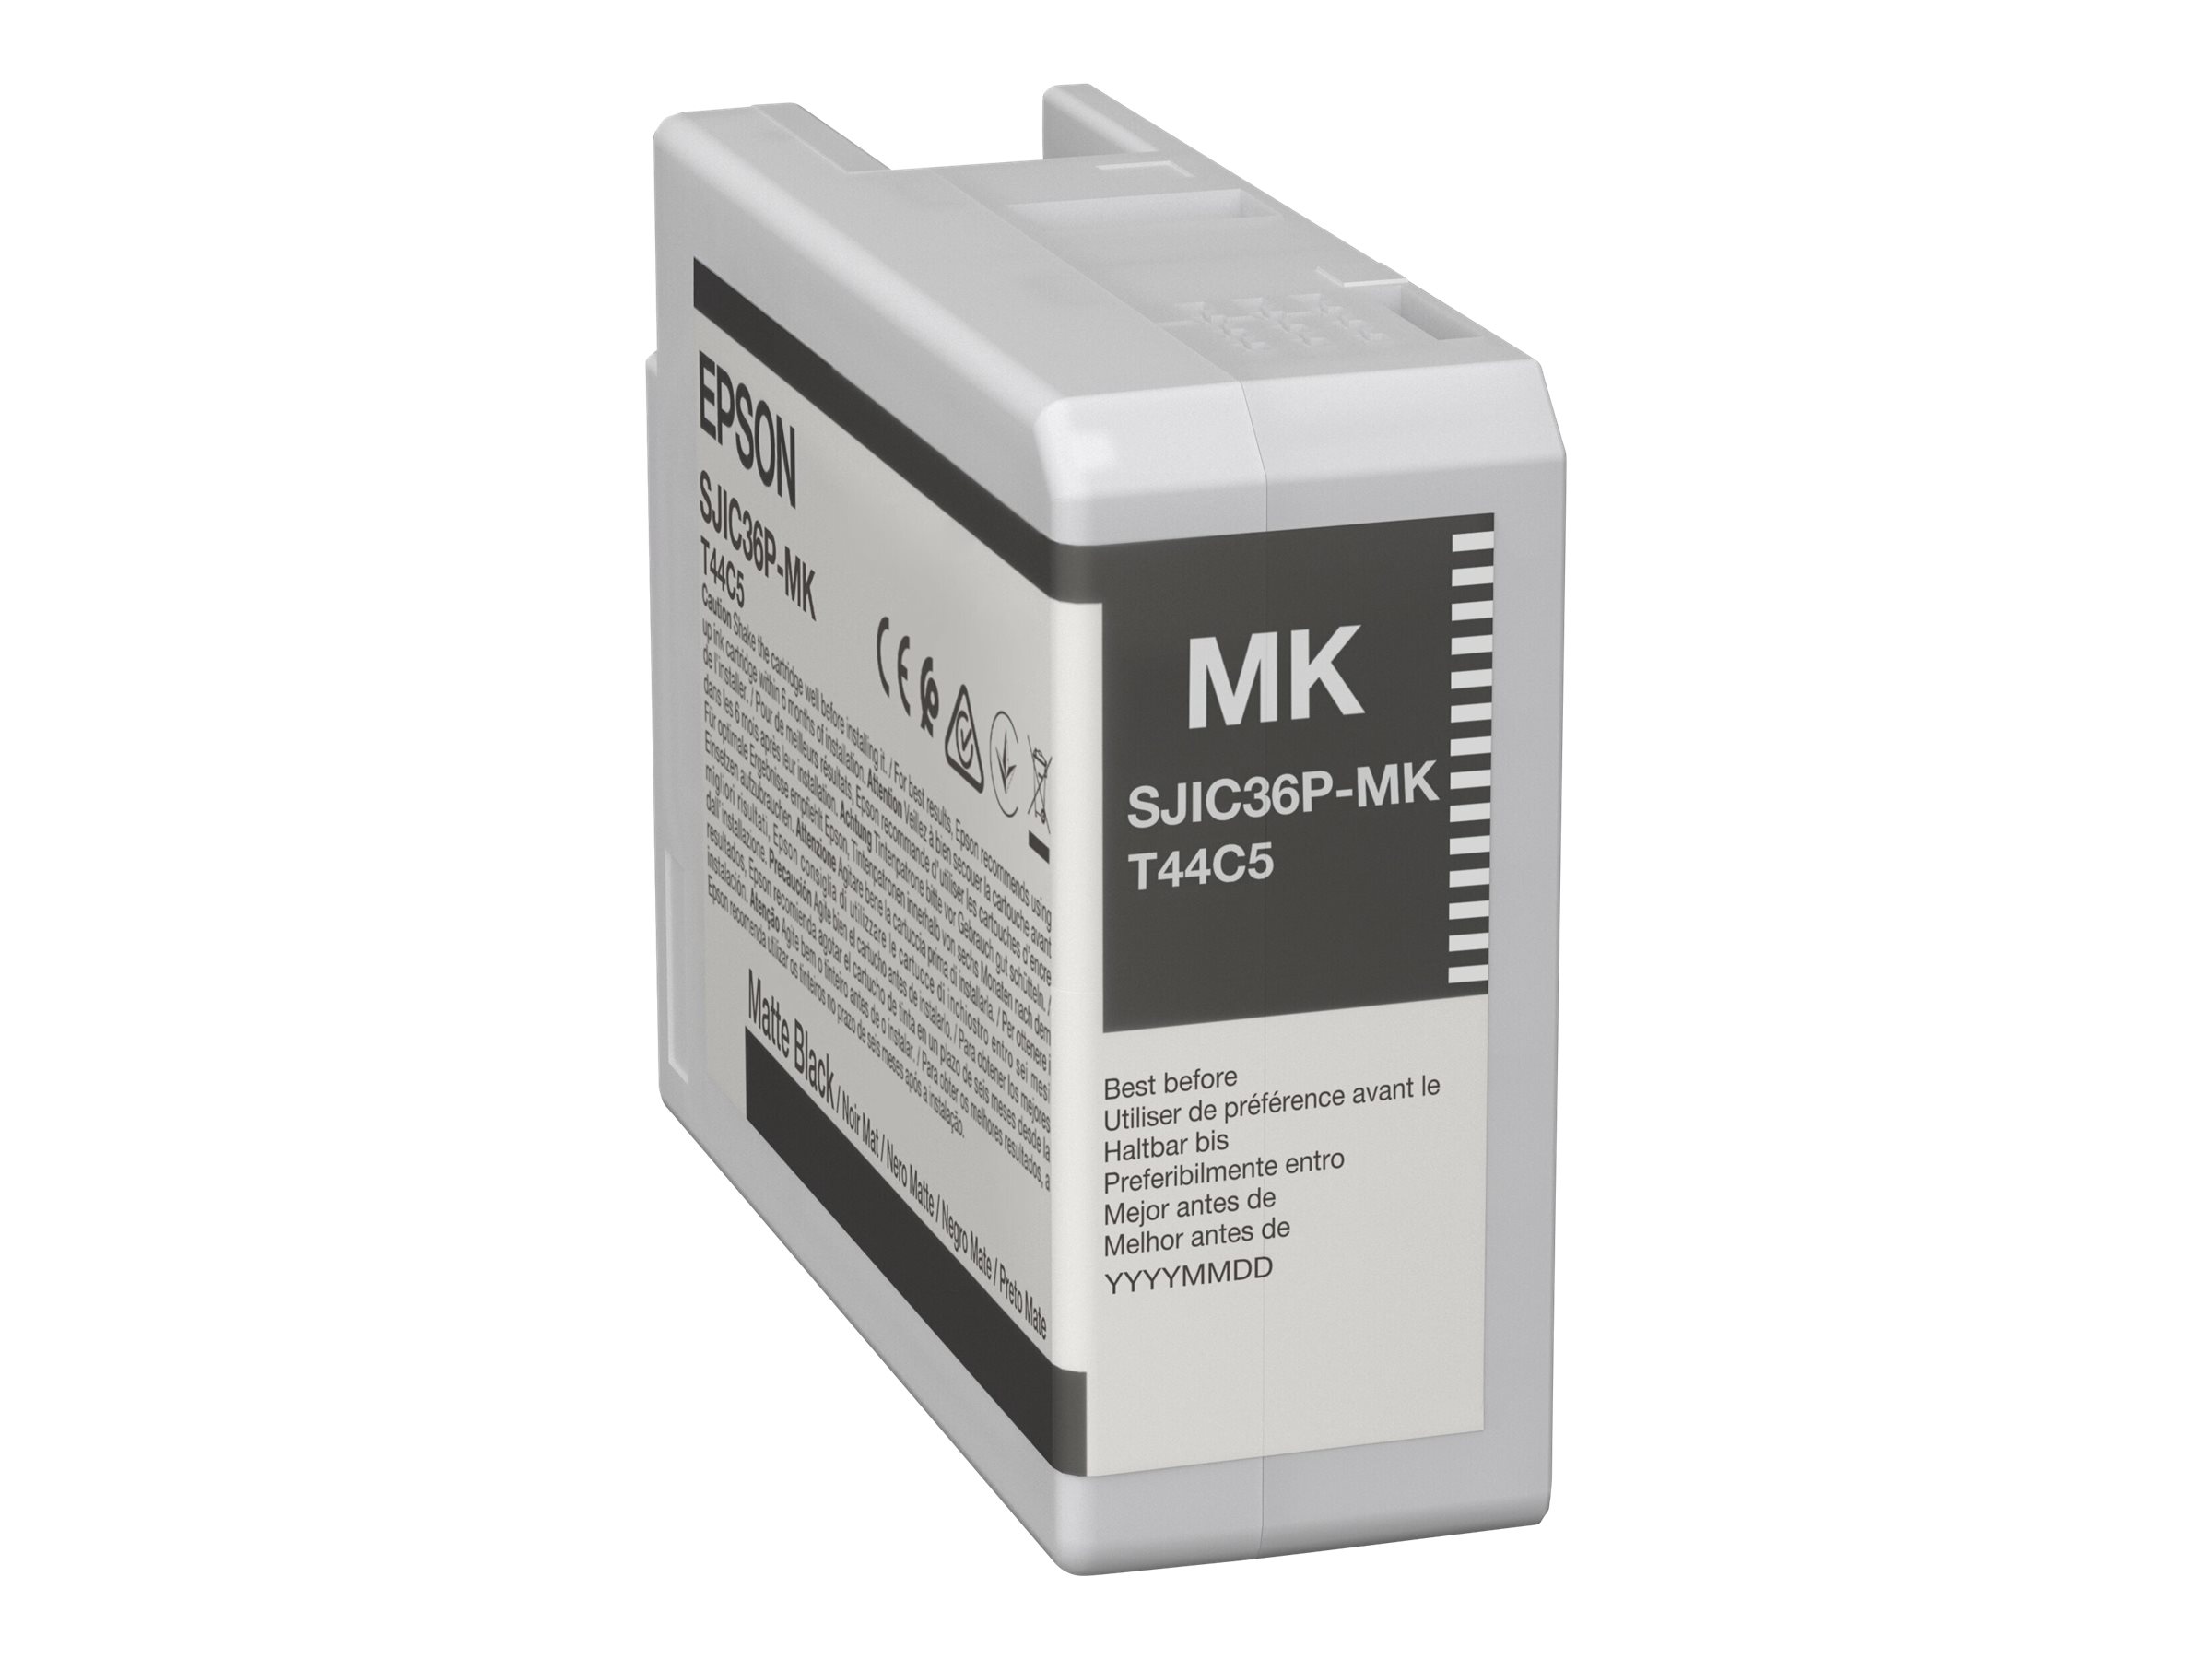 Epson SJIC36P(MK) - 80 ml - noir - original - cartouche d'encre - pour ColorWorks CW-C6000A, CW-C6000P, CW-C6500A, CW-C6500P - C13T44C540 - Cartouches d'encre Epson